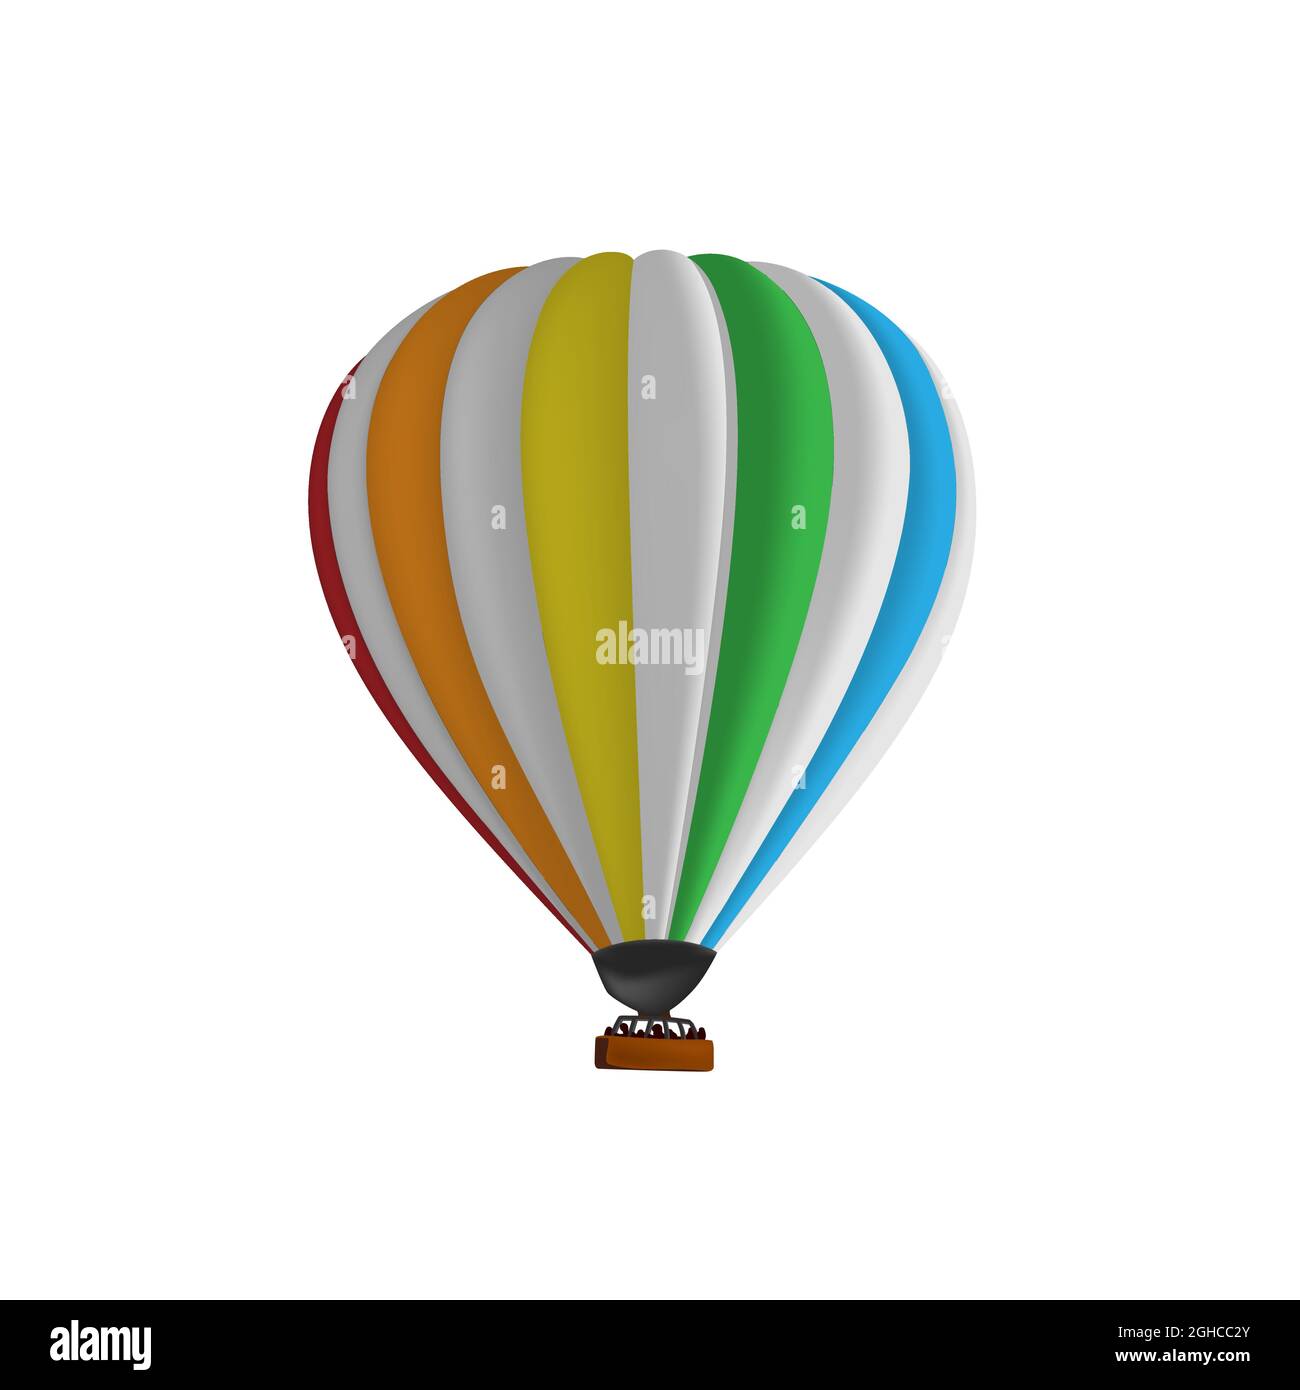 Heissluft Regenbogen Ballon Vektor Illustration. Grafik isolierte bunte  Fallschirm Flugzeuge. Ballonfestival Stock-Vektorgrafik - Alamy